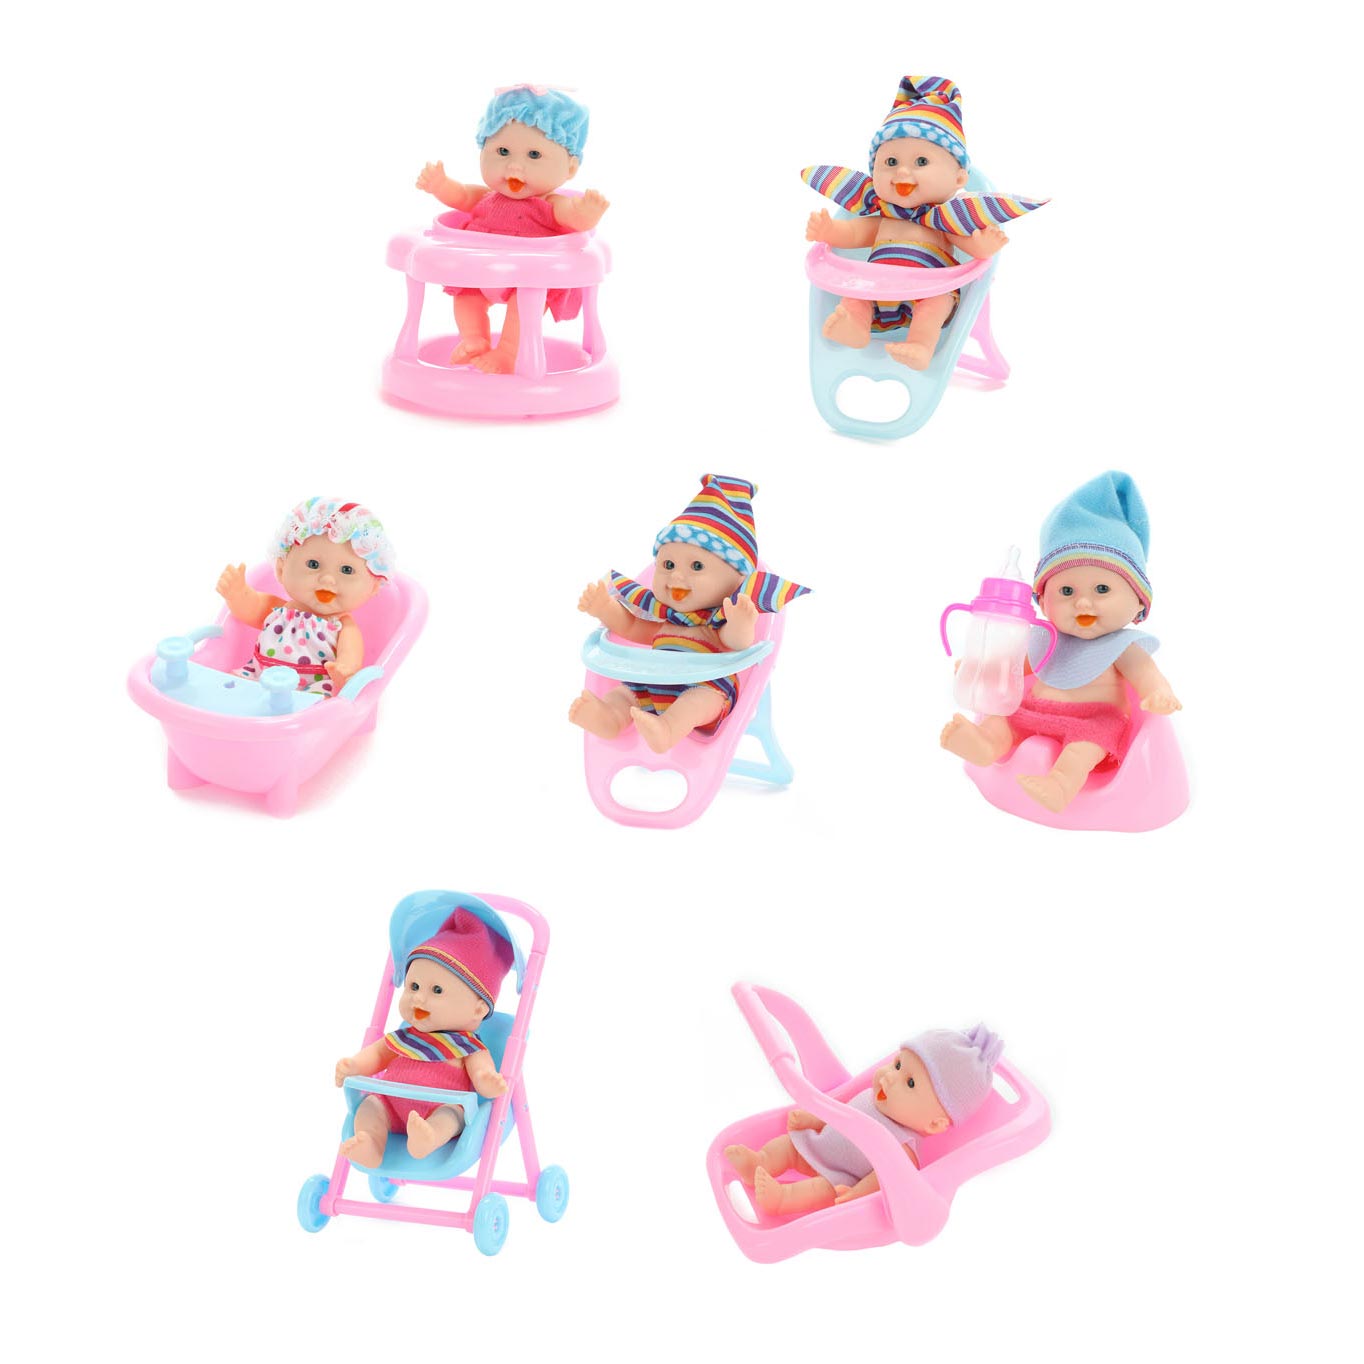 Baby Beau Mini Doll Sitting, 12cm | Toys